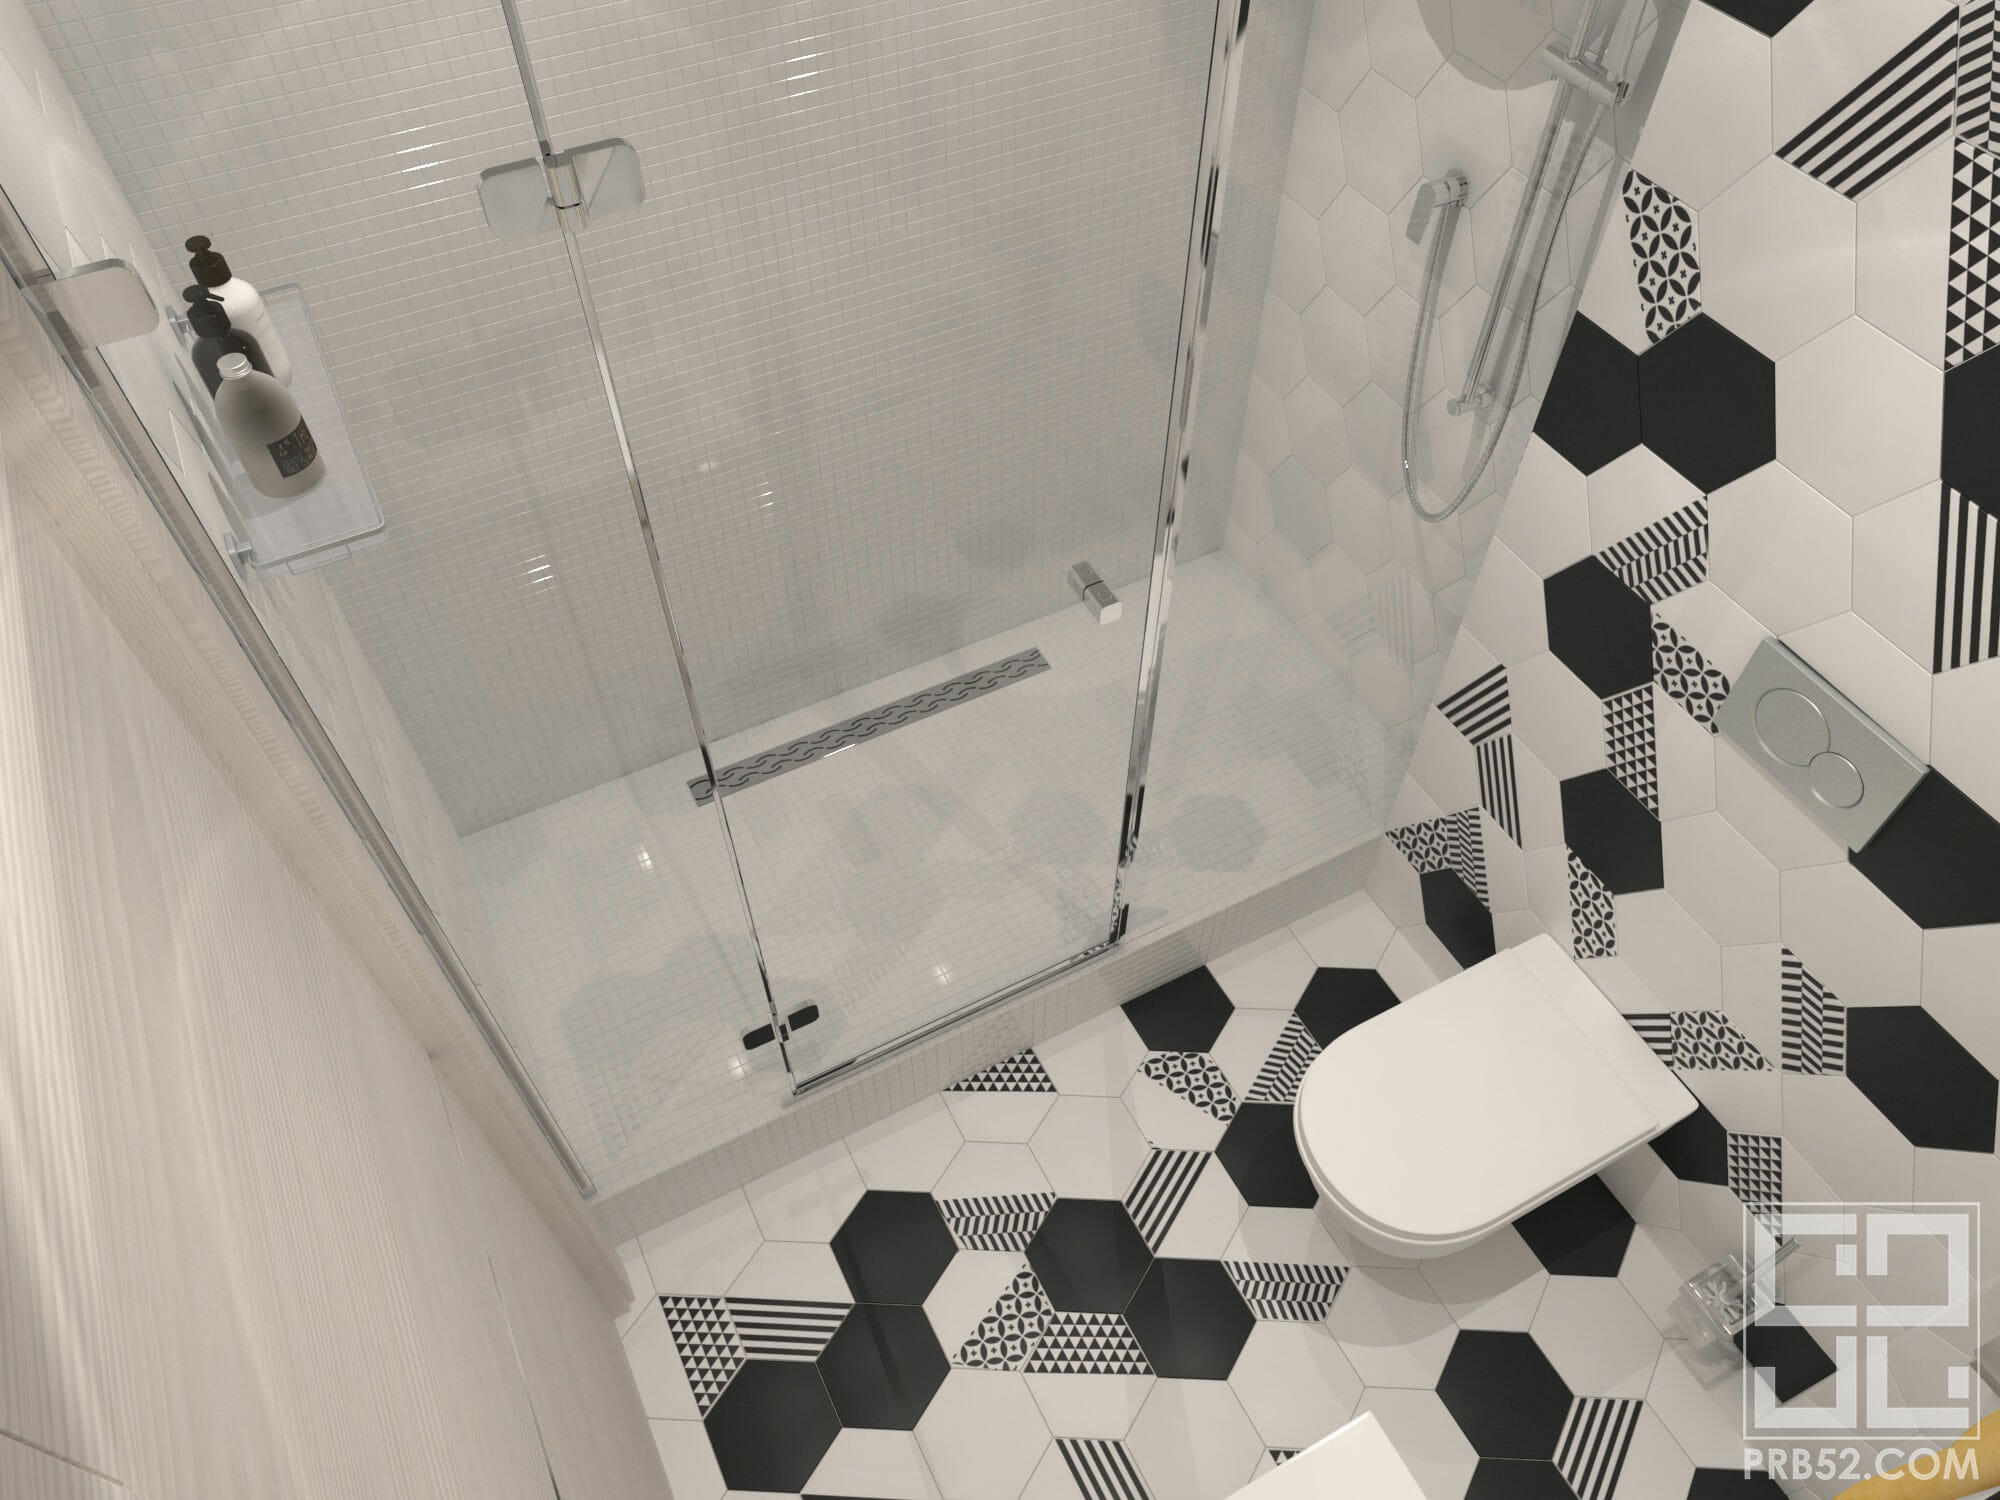 дизайн интерьера ванной комнаты с совмещенным санузлом